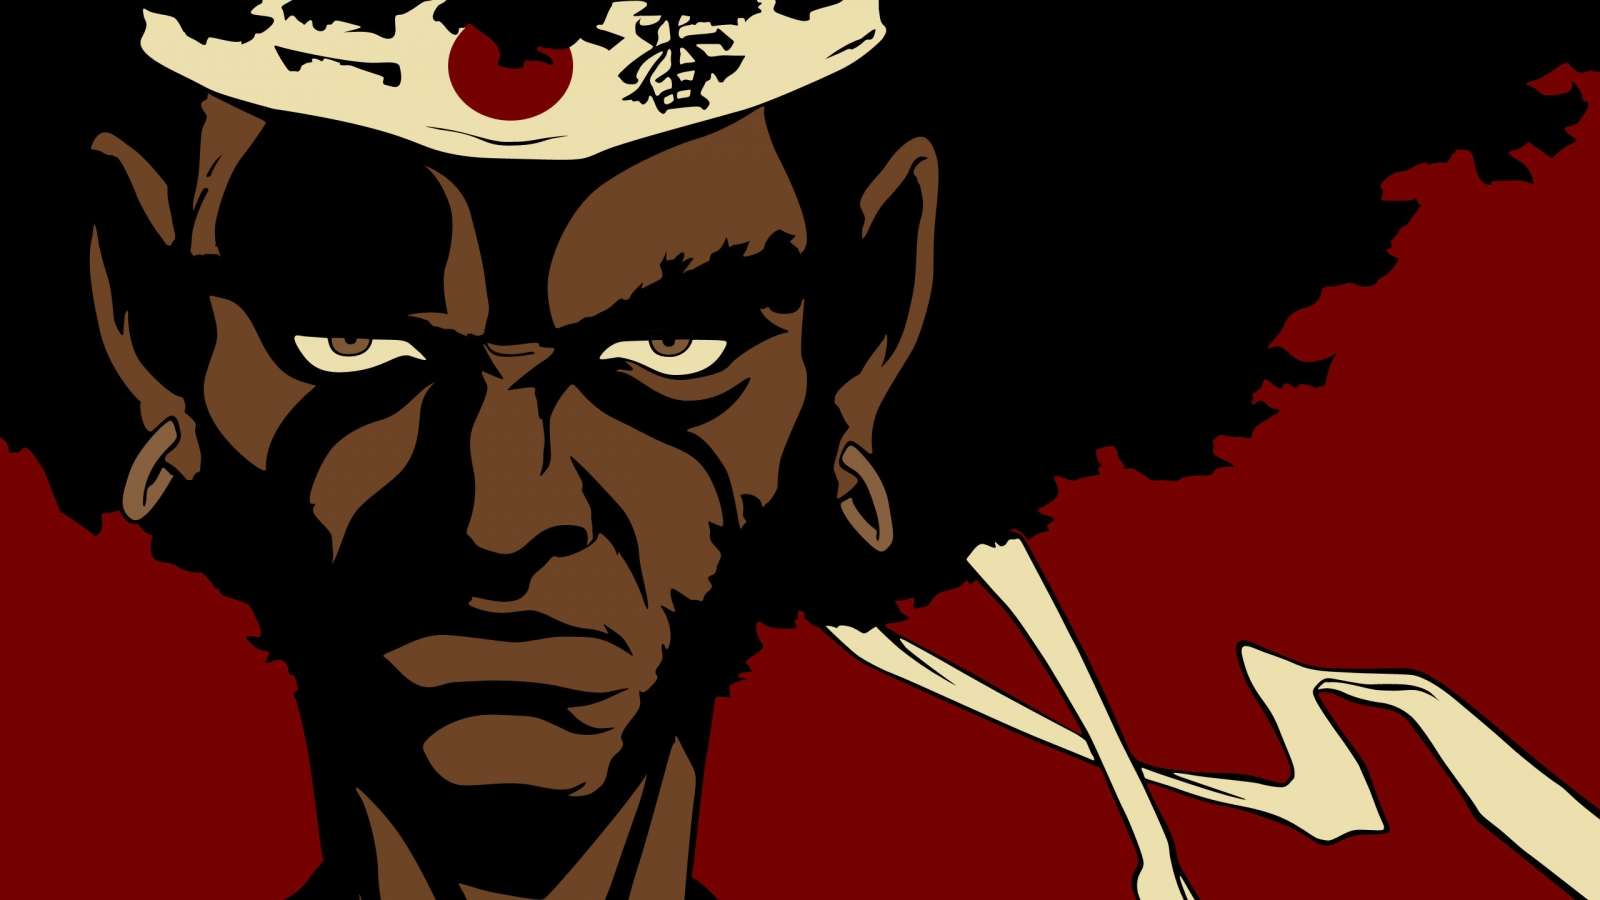 Afro Samurai Face for 1600 x 900 HDTV resolution